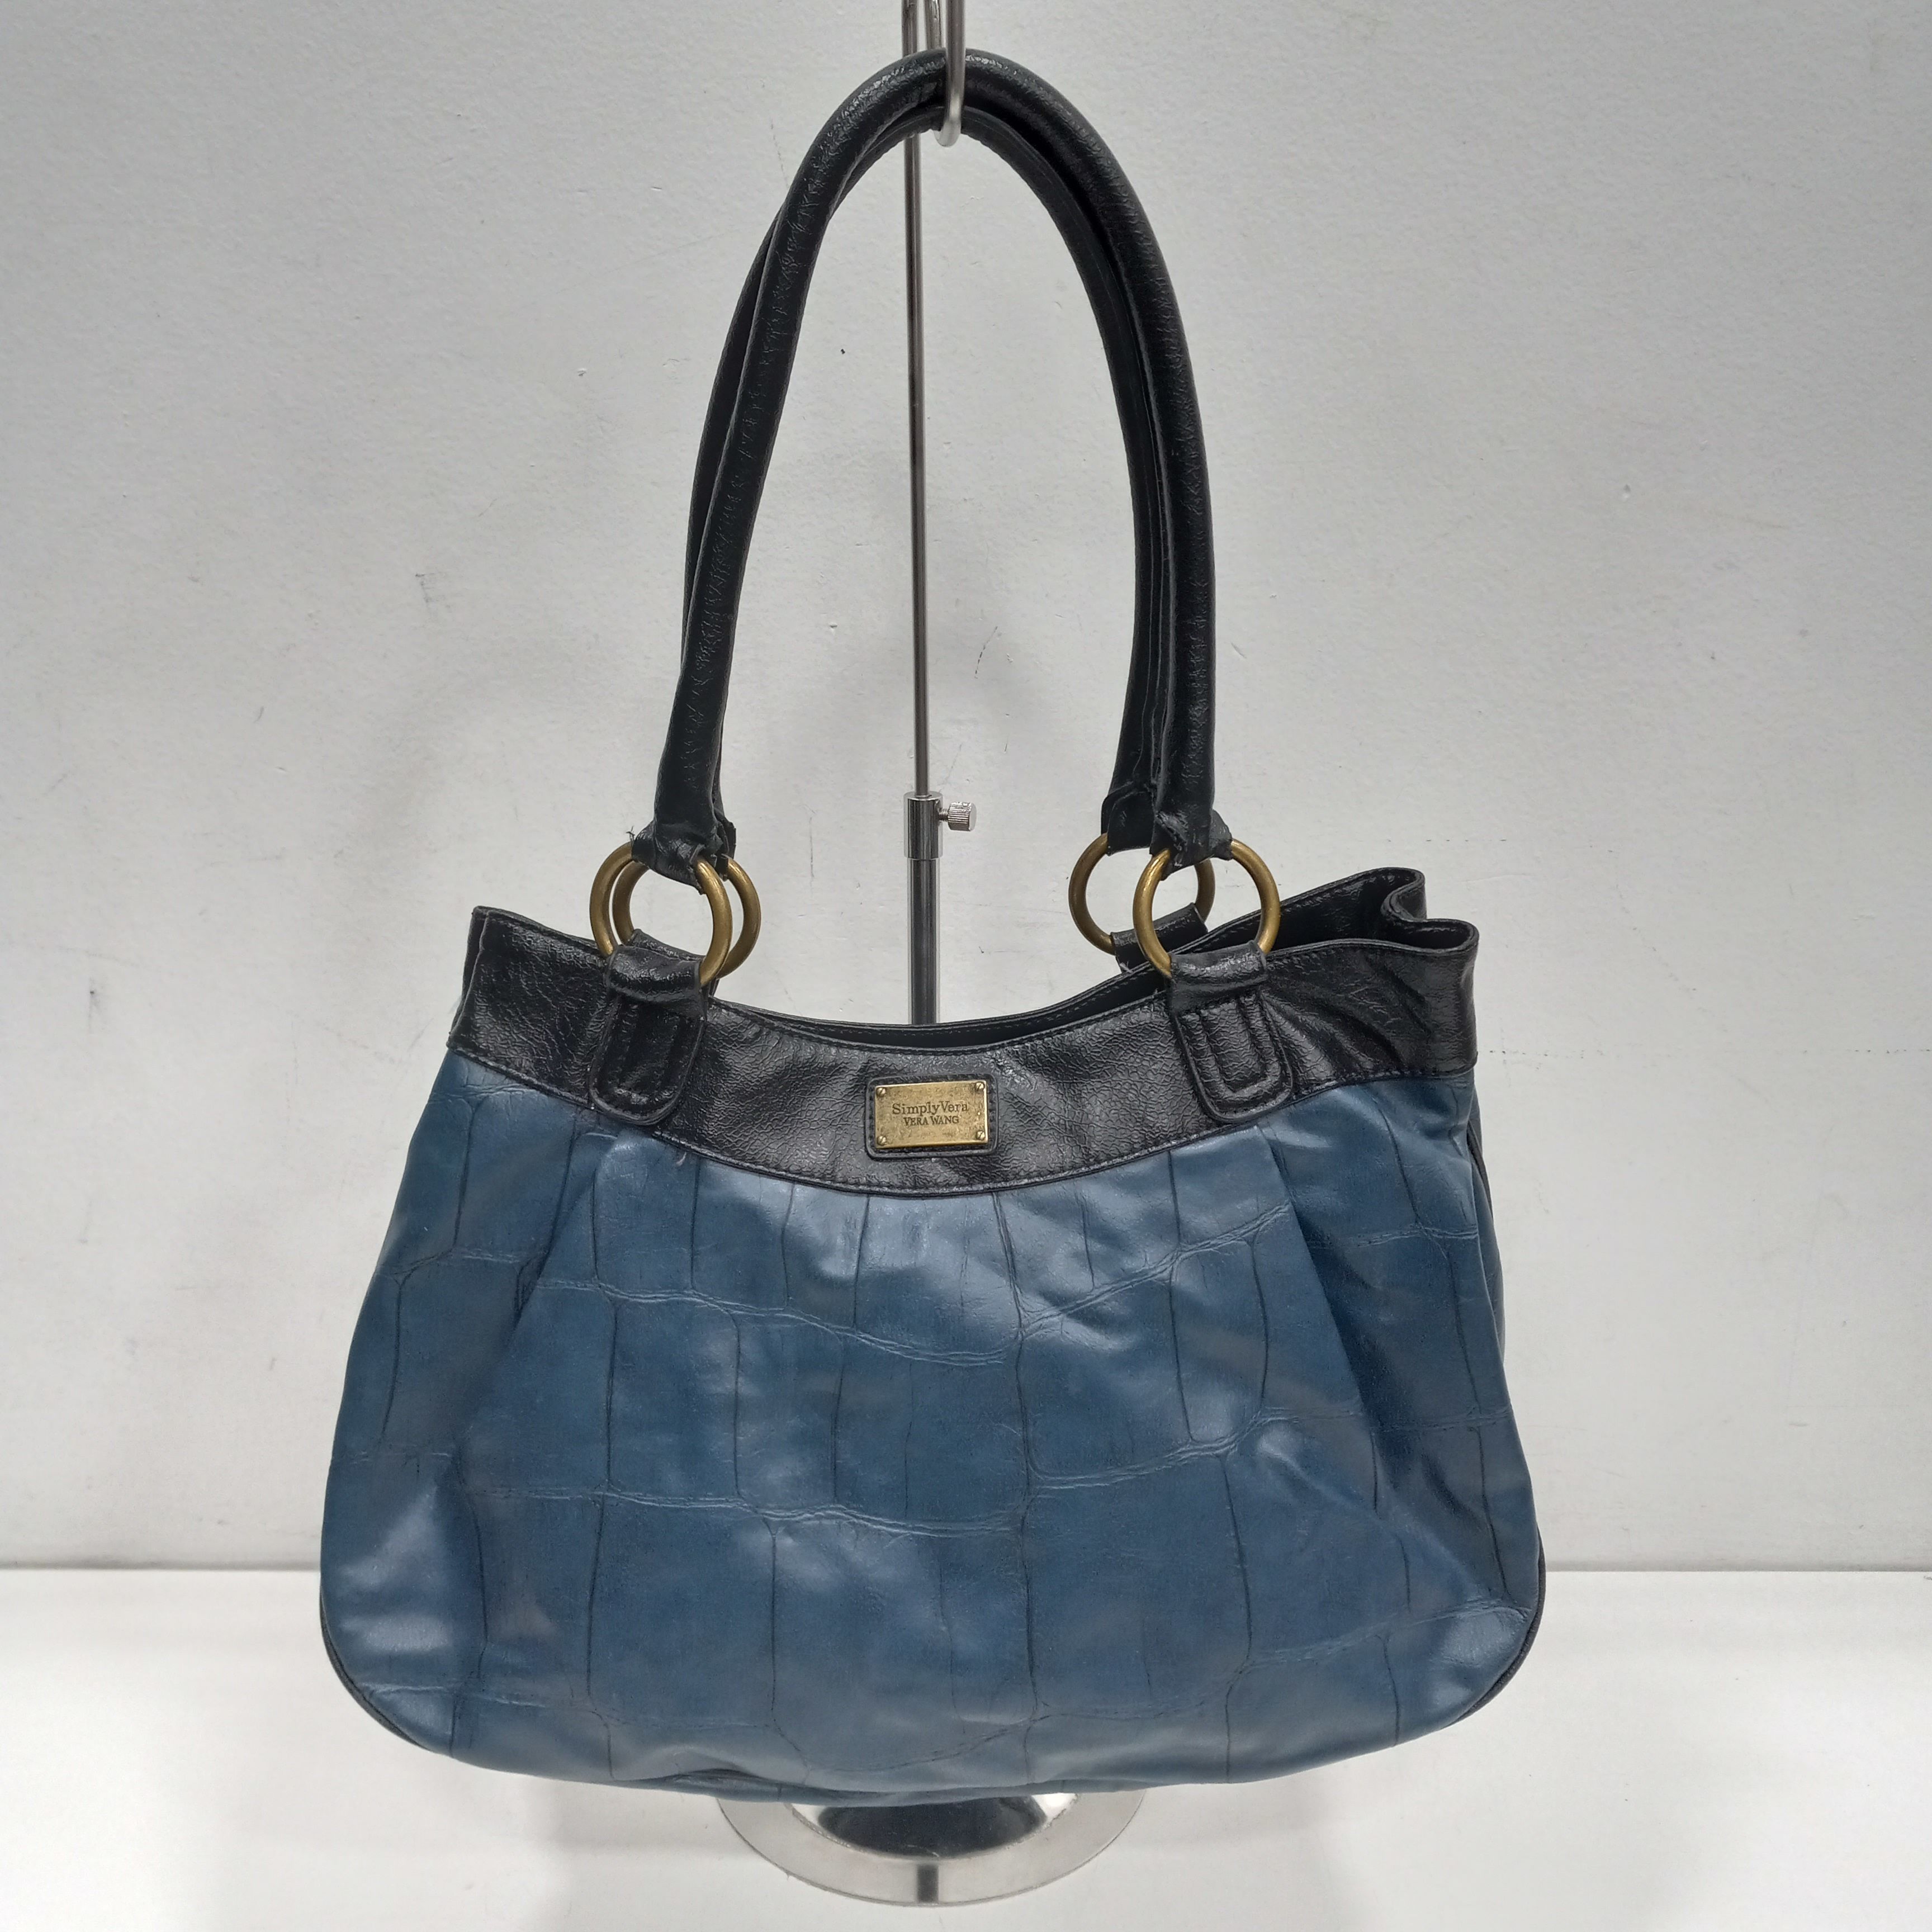 Simply Vera Vera Wang Handbags | Mercari